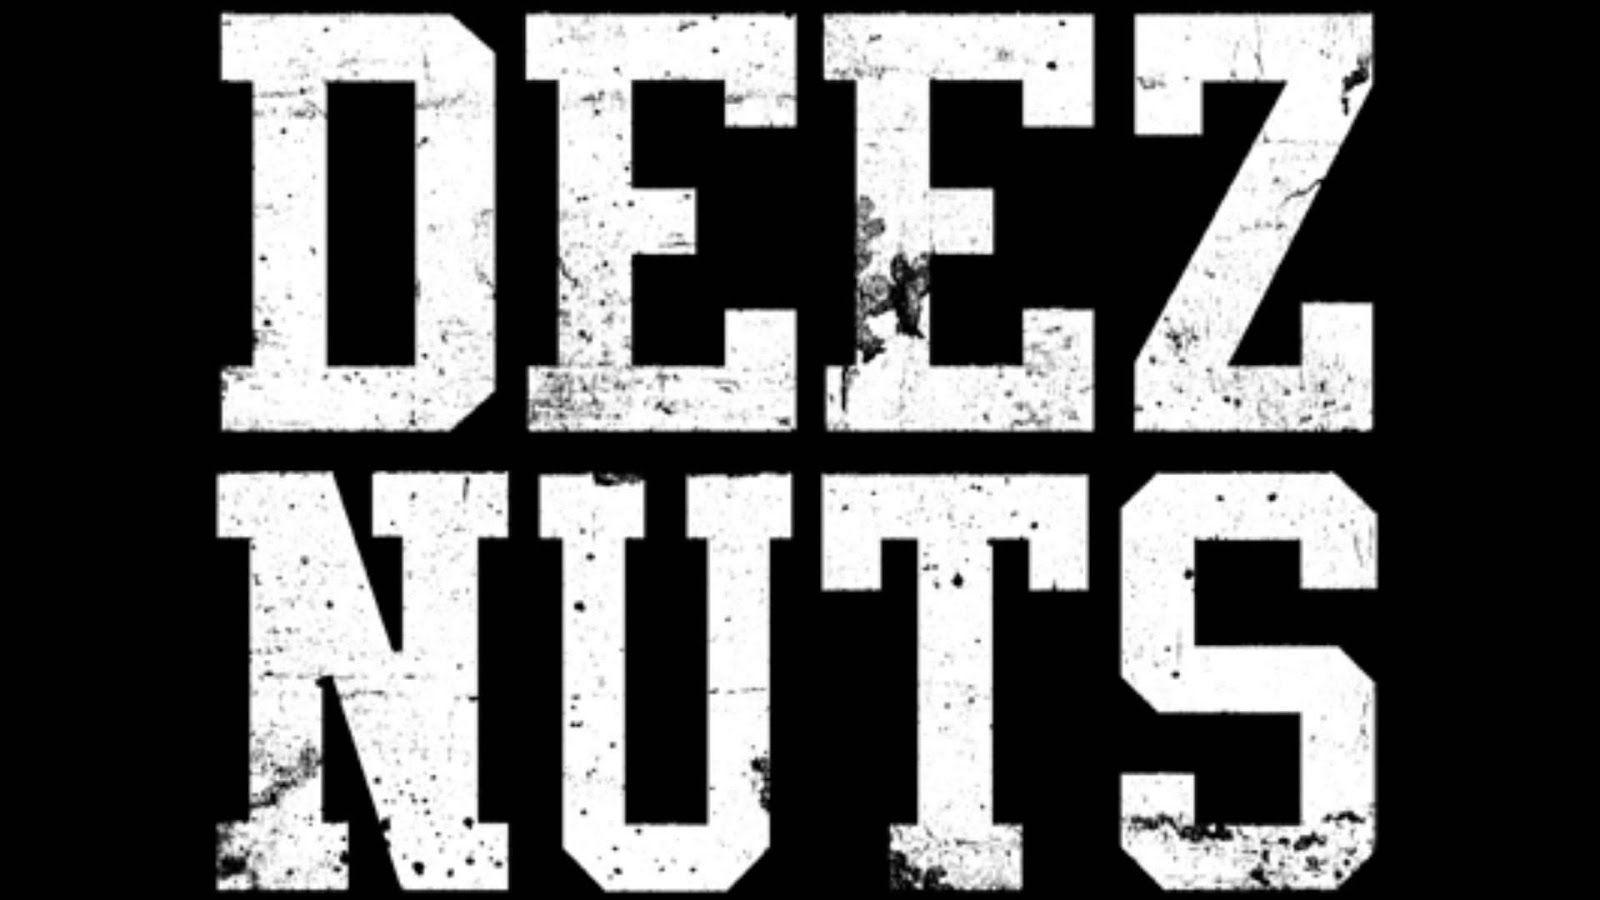 Deez Nuts Wallpapers